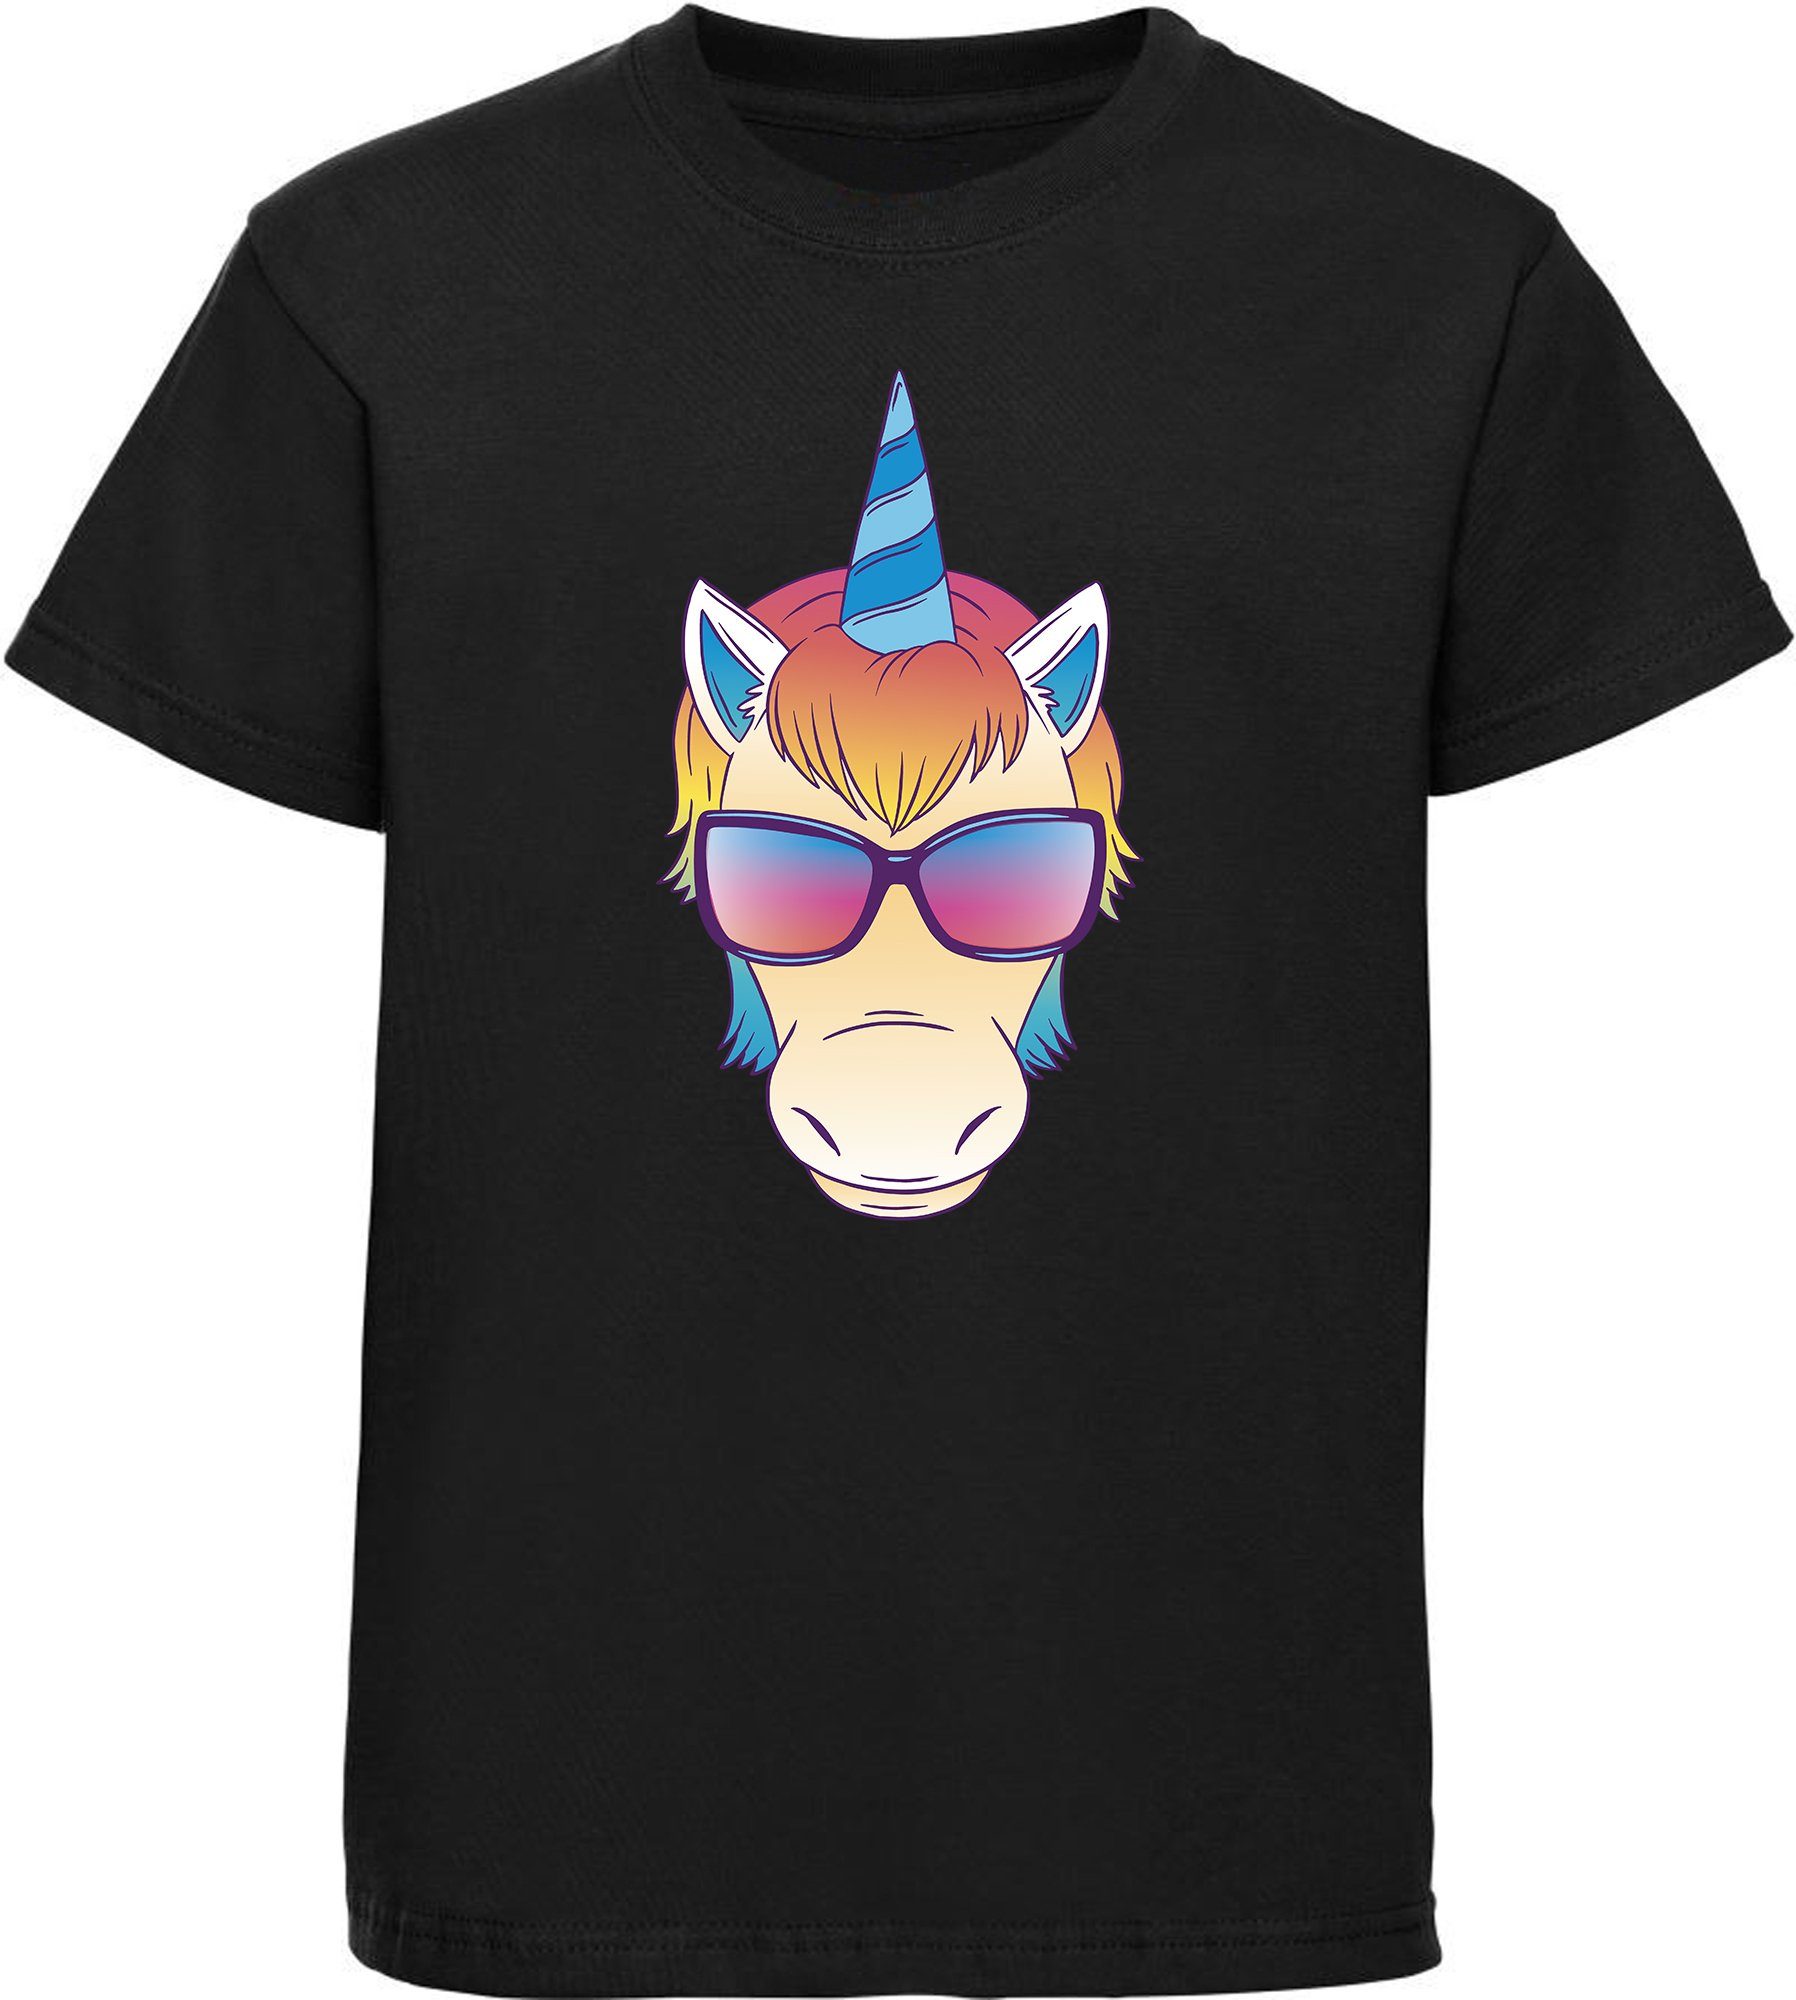 MyDesign24 T-Shirt Kinder Print Shirt bedruckt - Einhorn Kopf mit Sonnenbrille Baumwollshirt mit Aufdruck, i255 schwarz